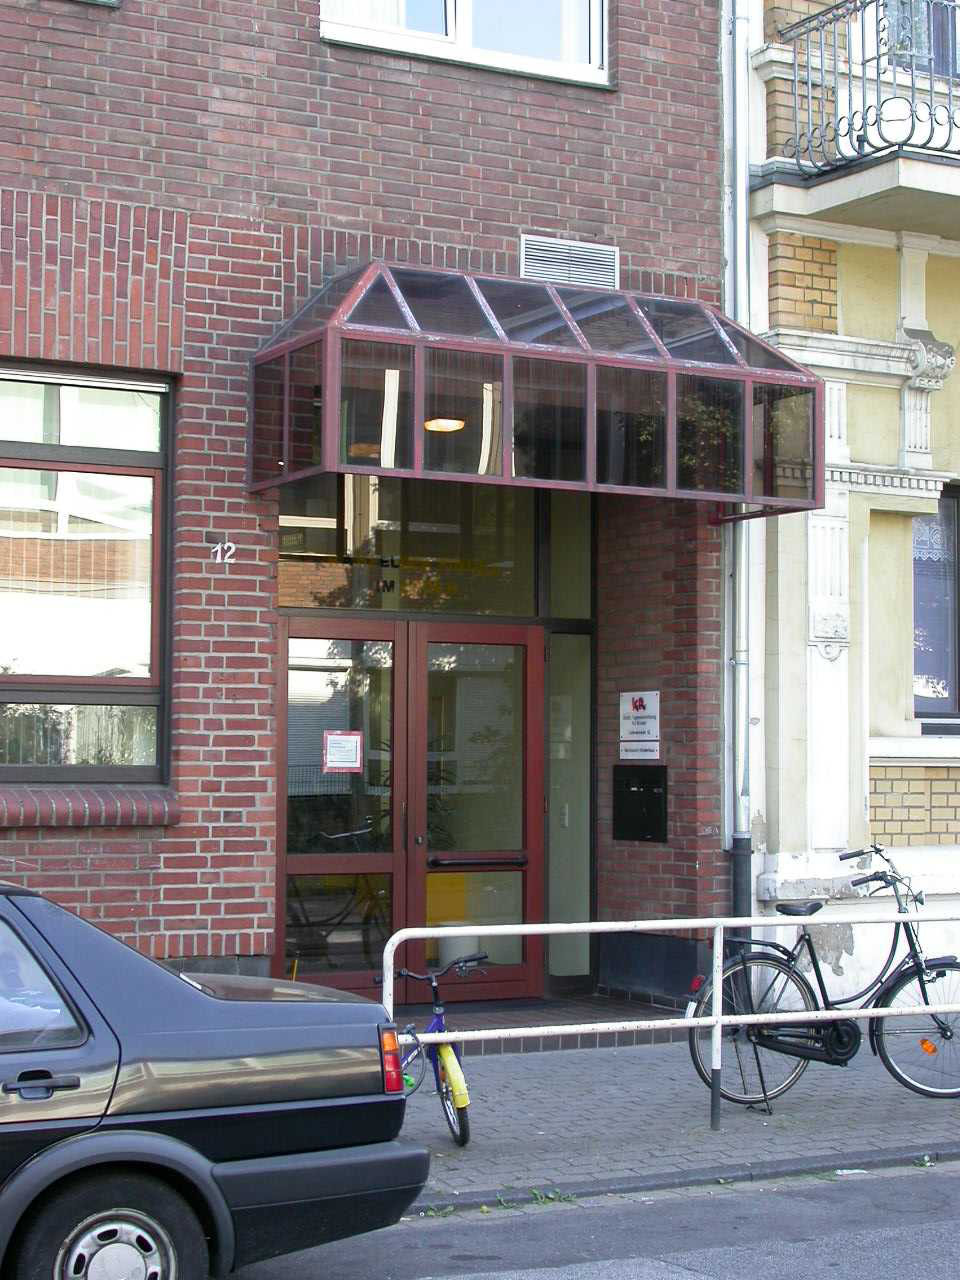 Der Eingang zur städtischen Tageseinrichtung für Kinder Lüdersstraße, die im Erdgeschoss eines Wohnhauses untergebracht ist.